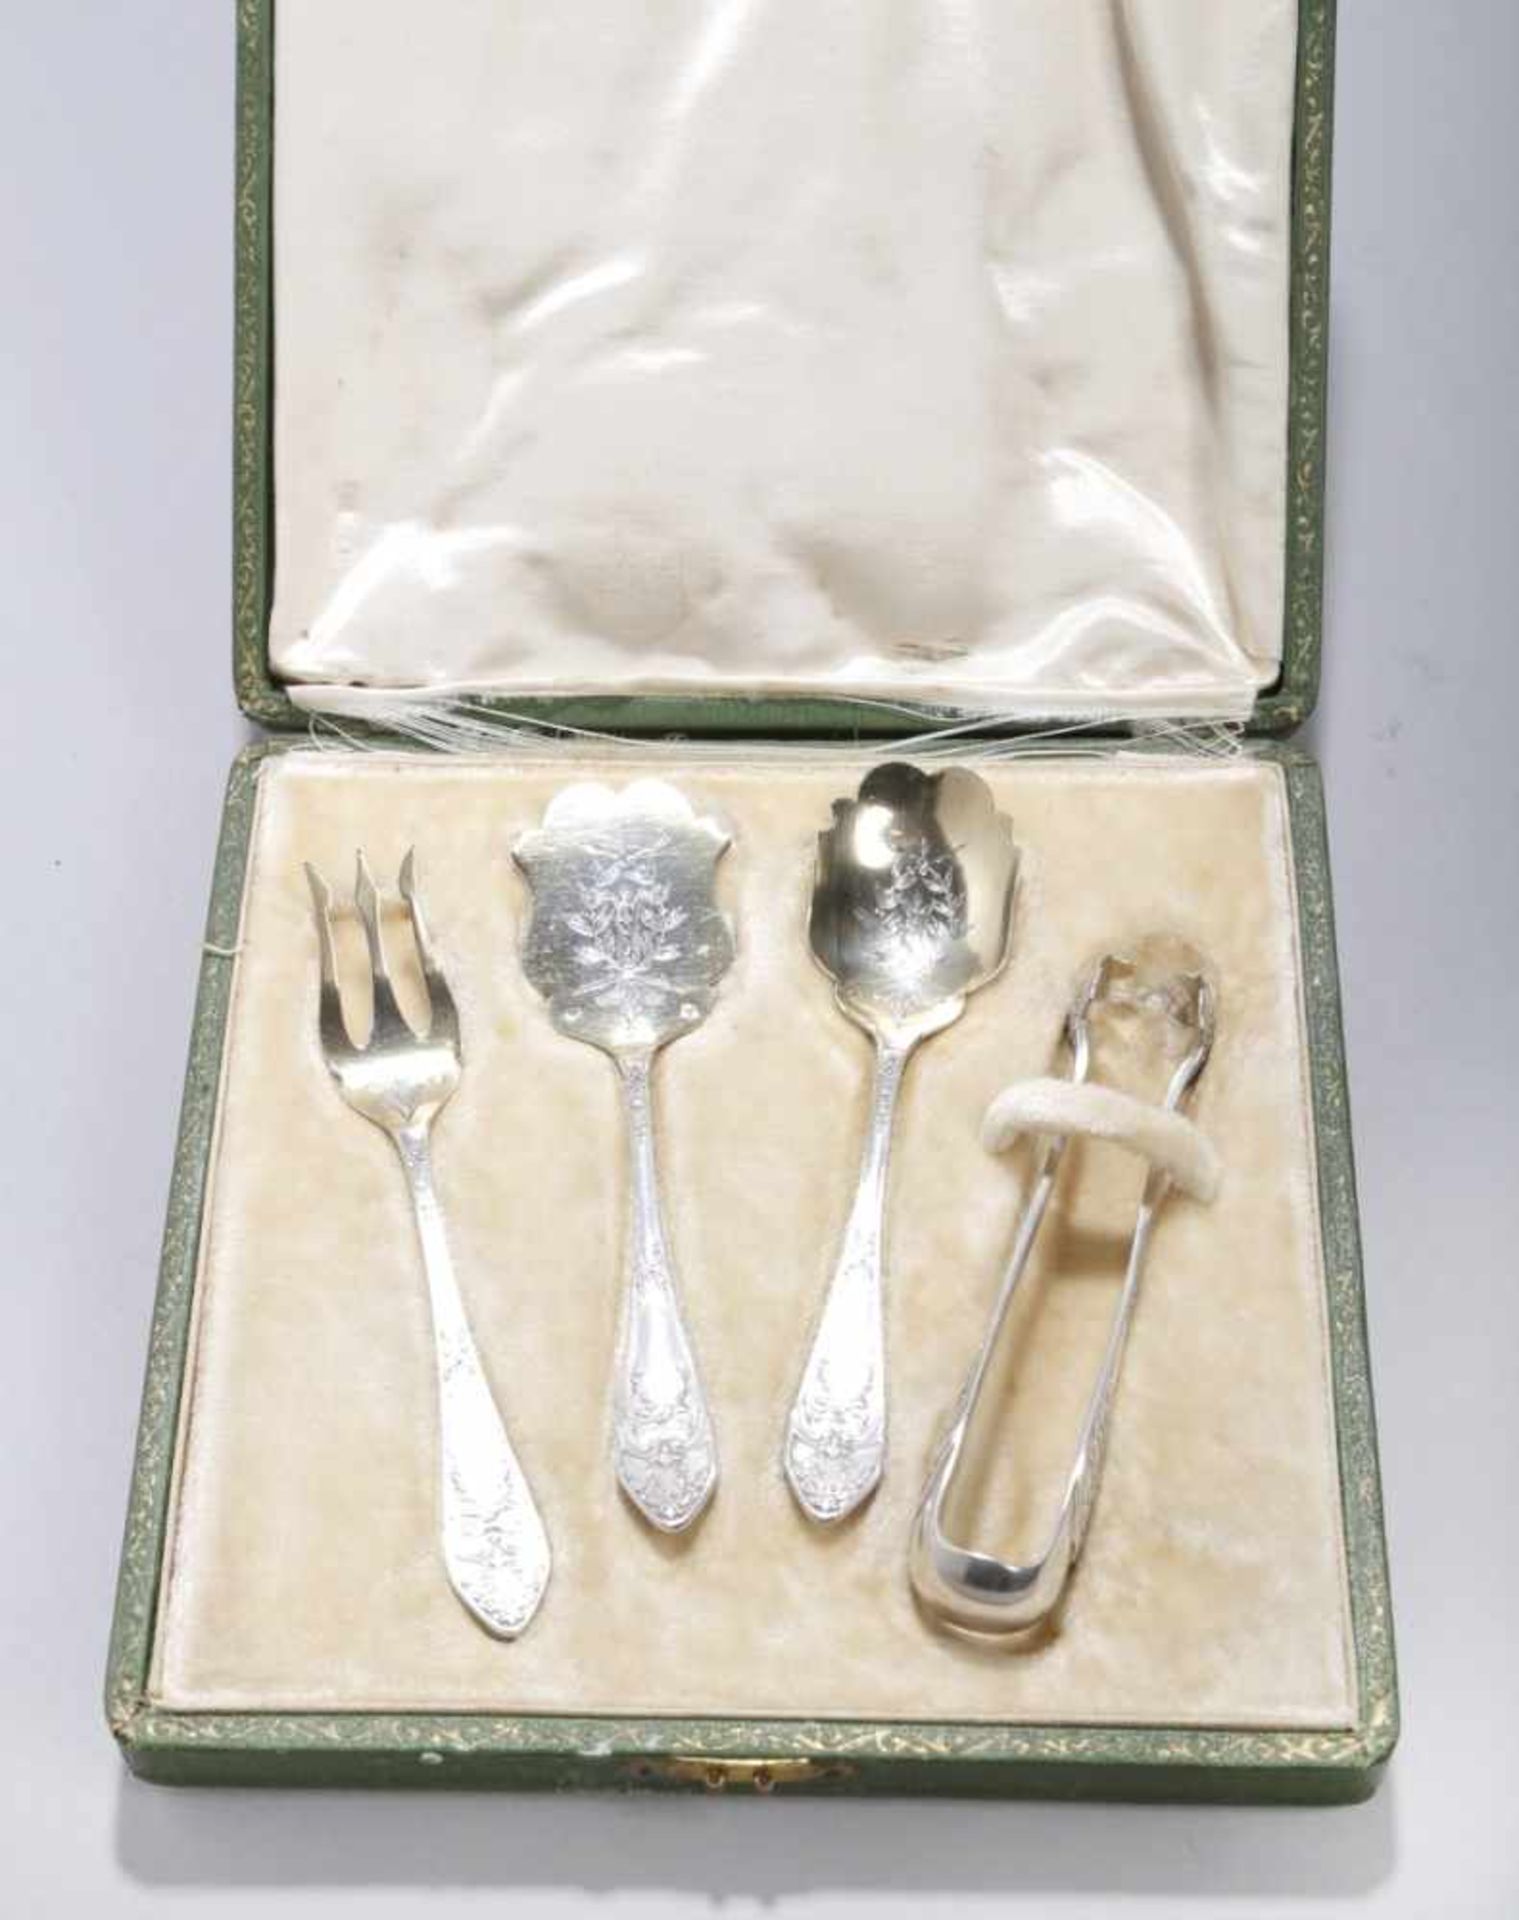 Vorlege- bzw. Petit Four Besteck, 4-tlg, Frankreich, um 1900, Silber 950, reich verziertmit